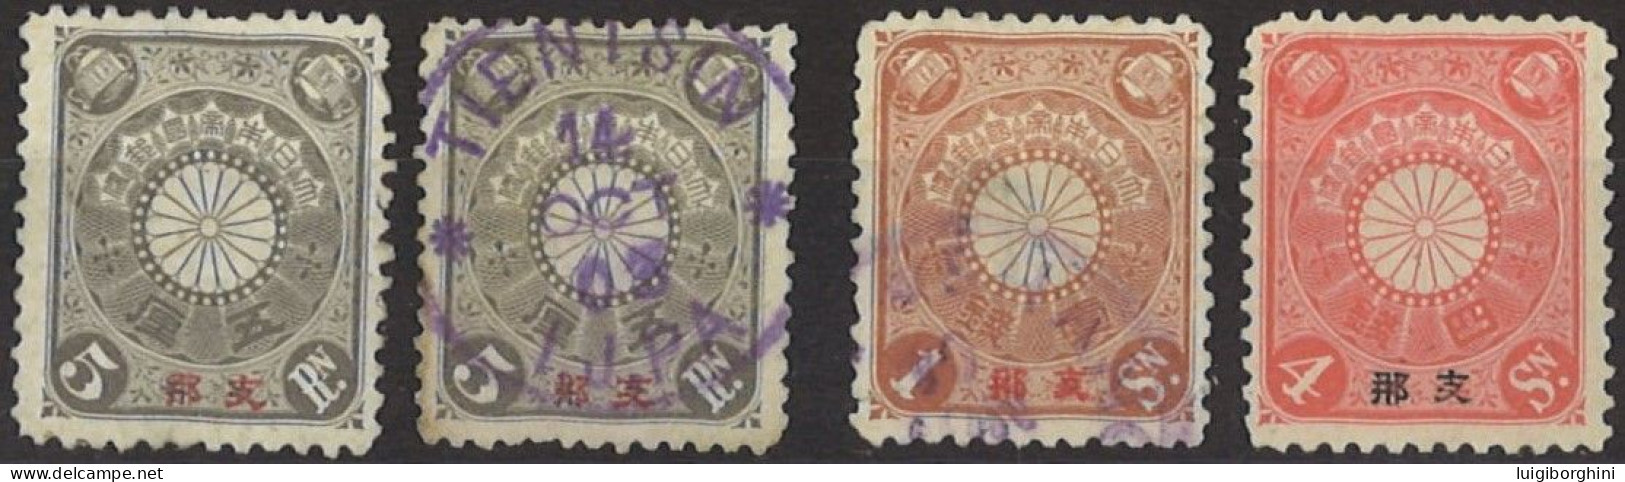 COREA 1900 - Ufficio Postale Giapponese In Corea - Corea (...-1945)